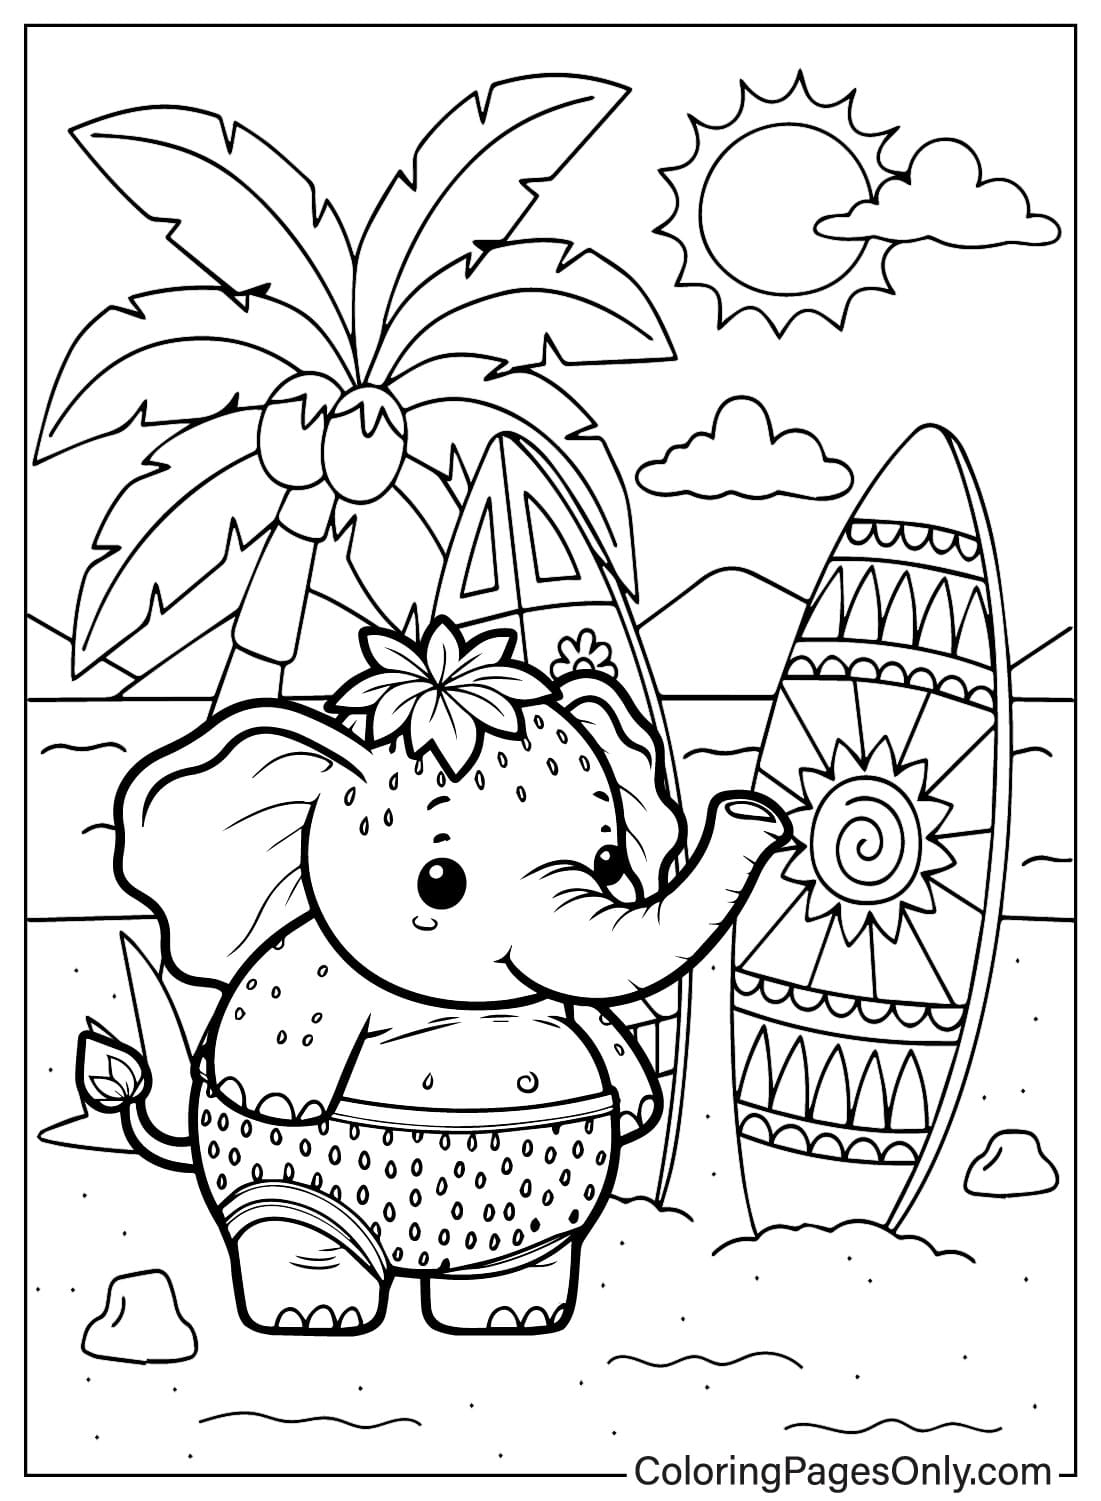 Elefante de fresa va a la playa Página para colorear de Elefante de fresa